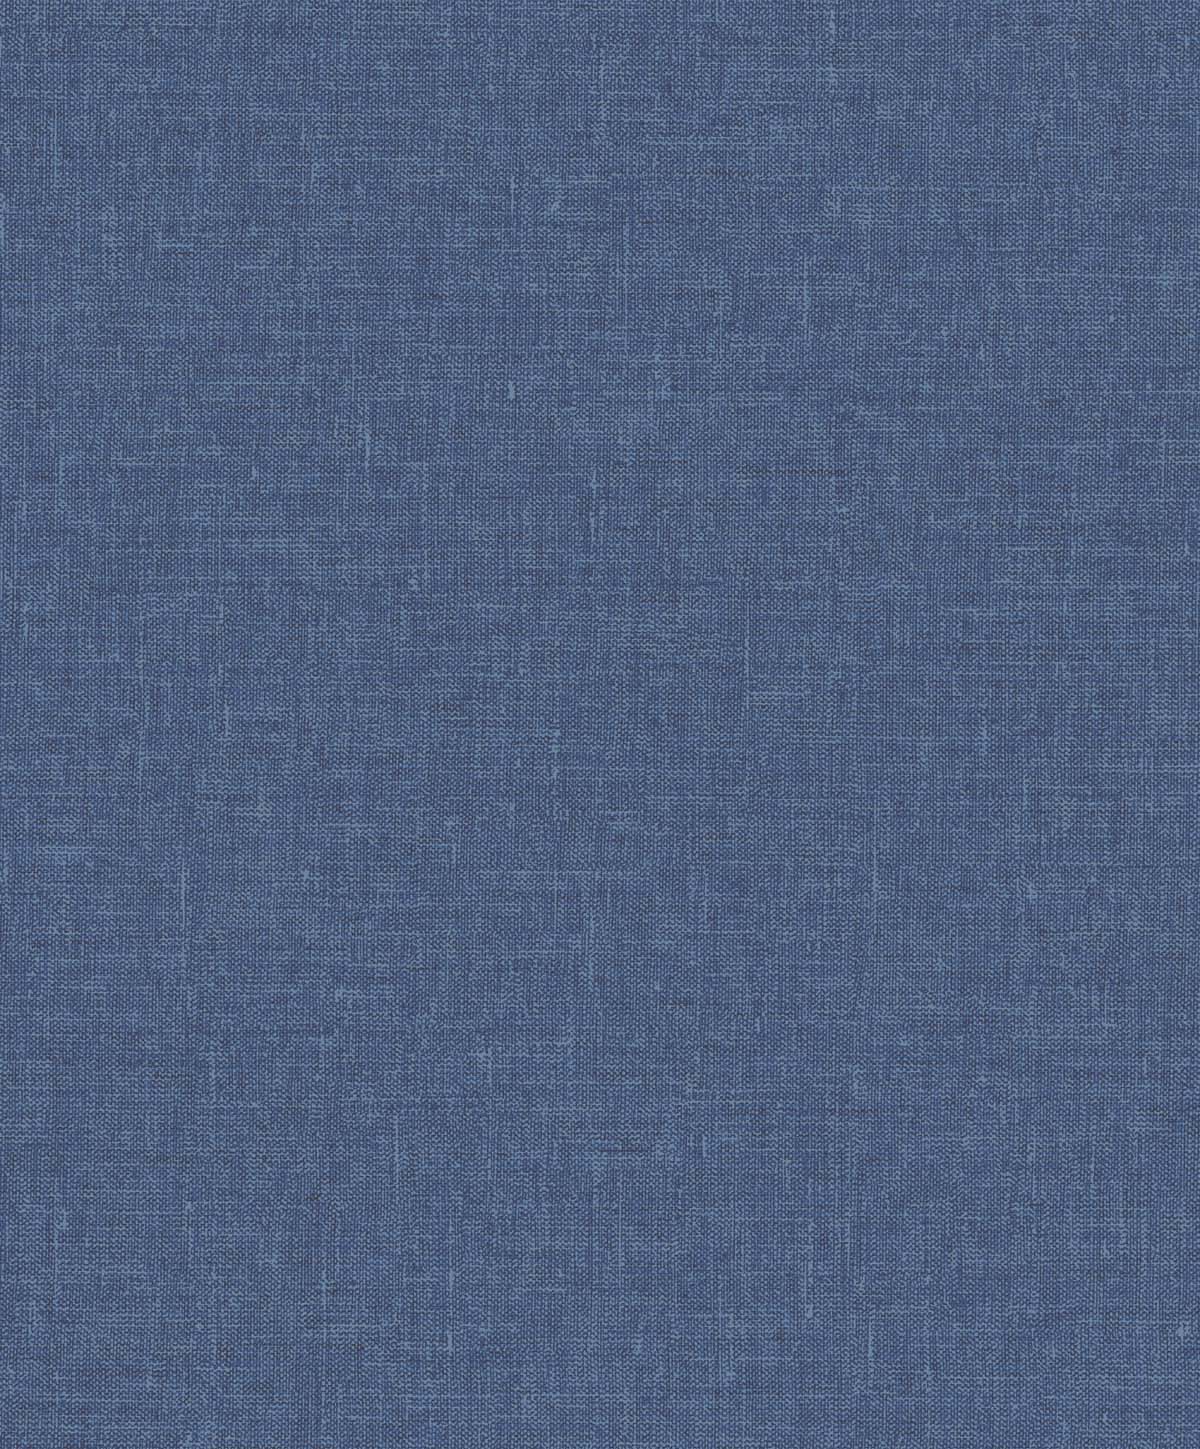 SL81142 | Soft Linen , Blue - Seabrook Designs Wallpaper